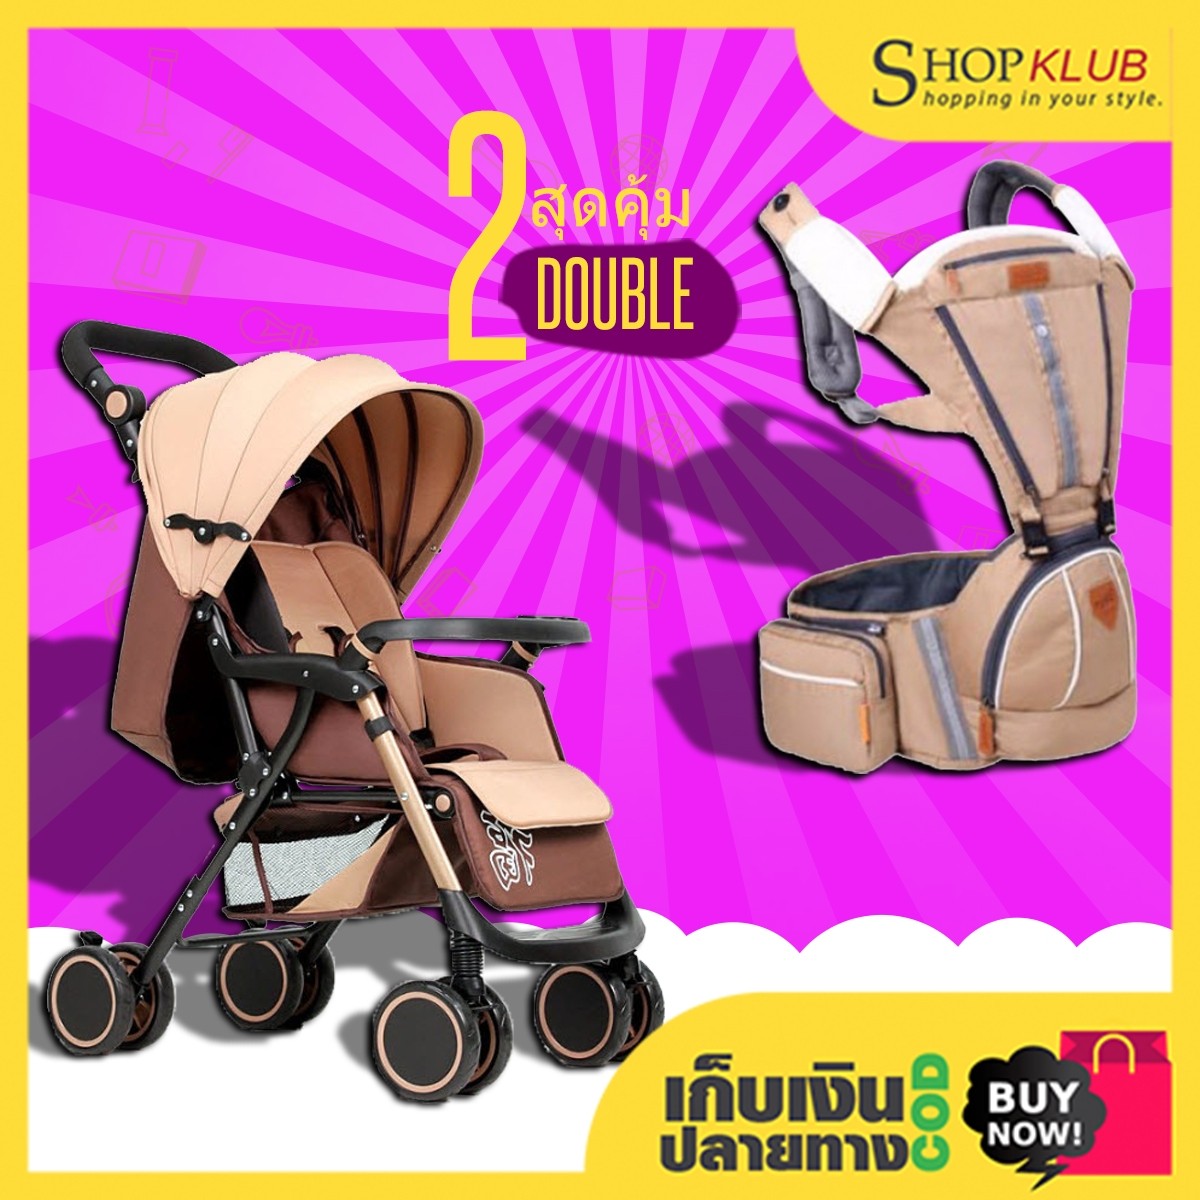 แพ็คคู่ : รถเข็นเด็ก baby stroller A6 + เป้อุ้มเด็ก 3 in 1 B2174